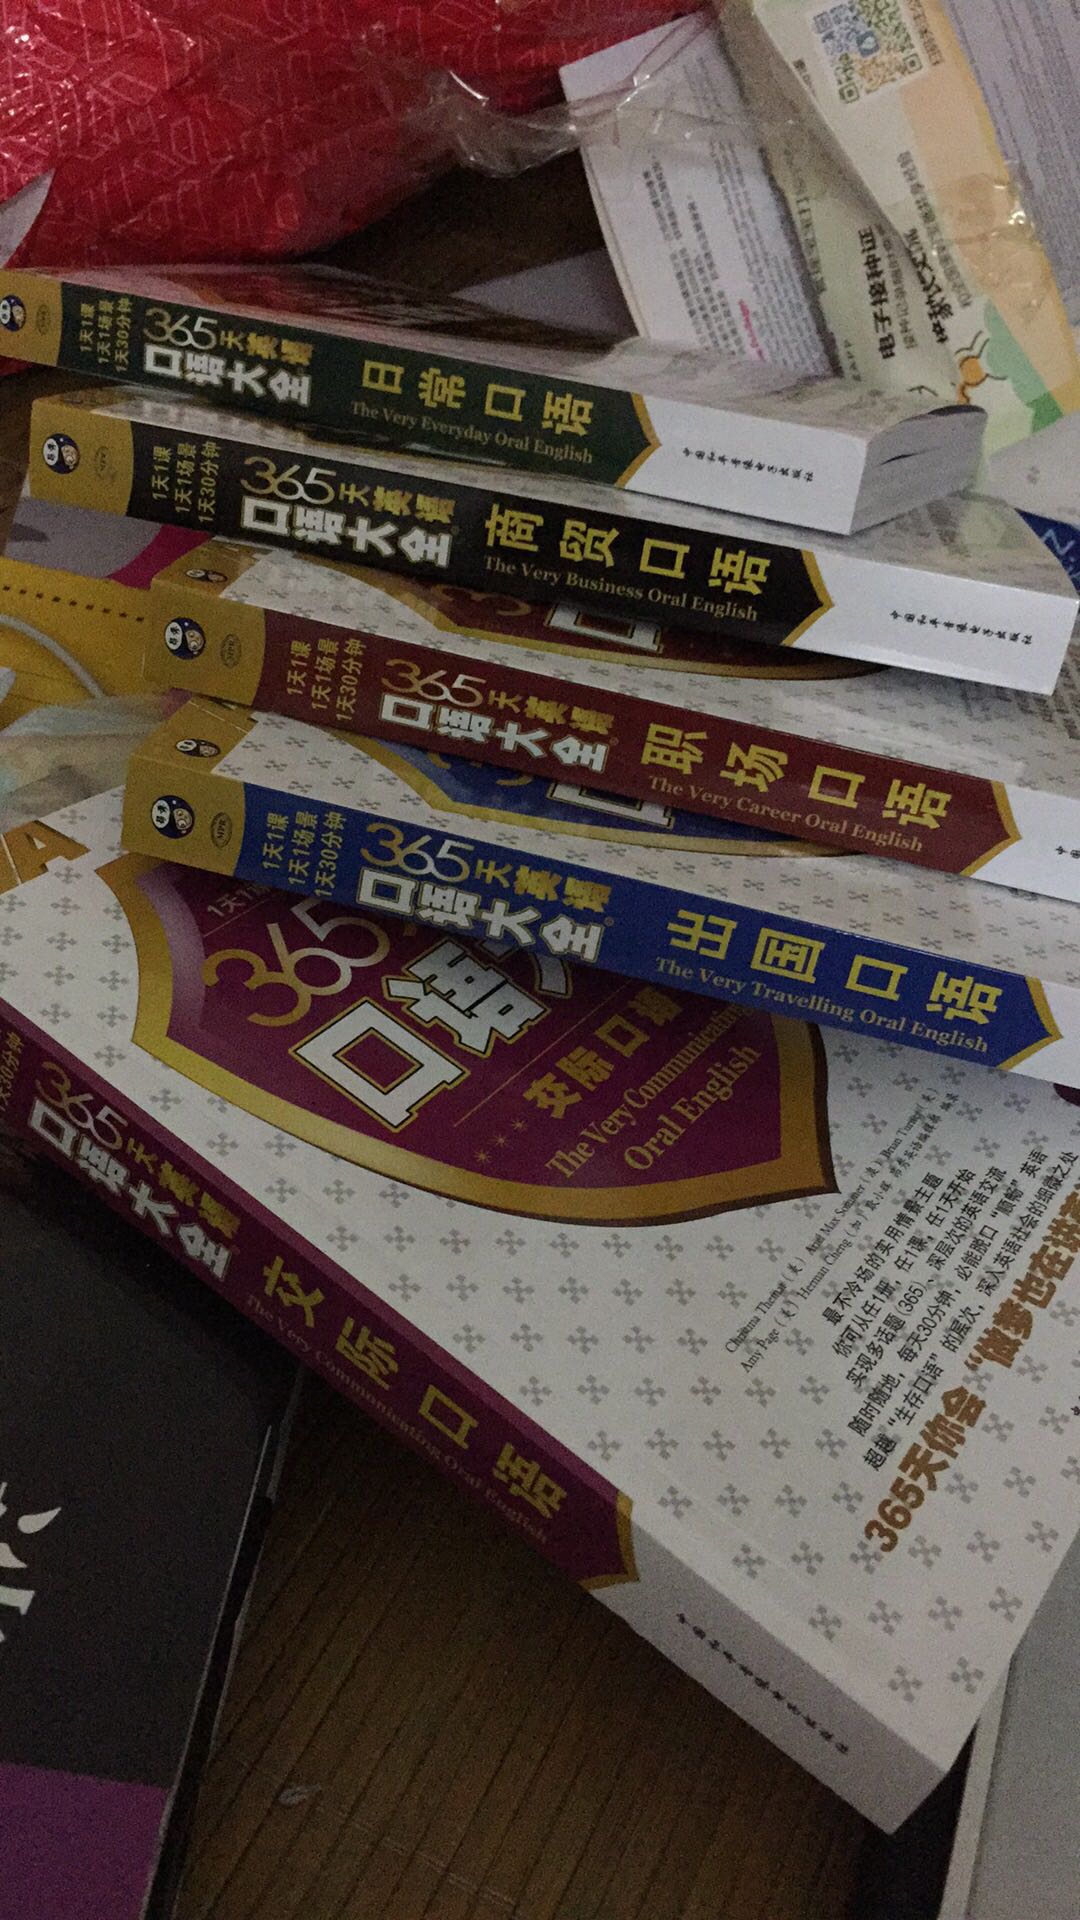 买了一堆的书，不知道这次能不能坚持学好英语。加油，书不错。